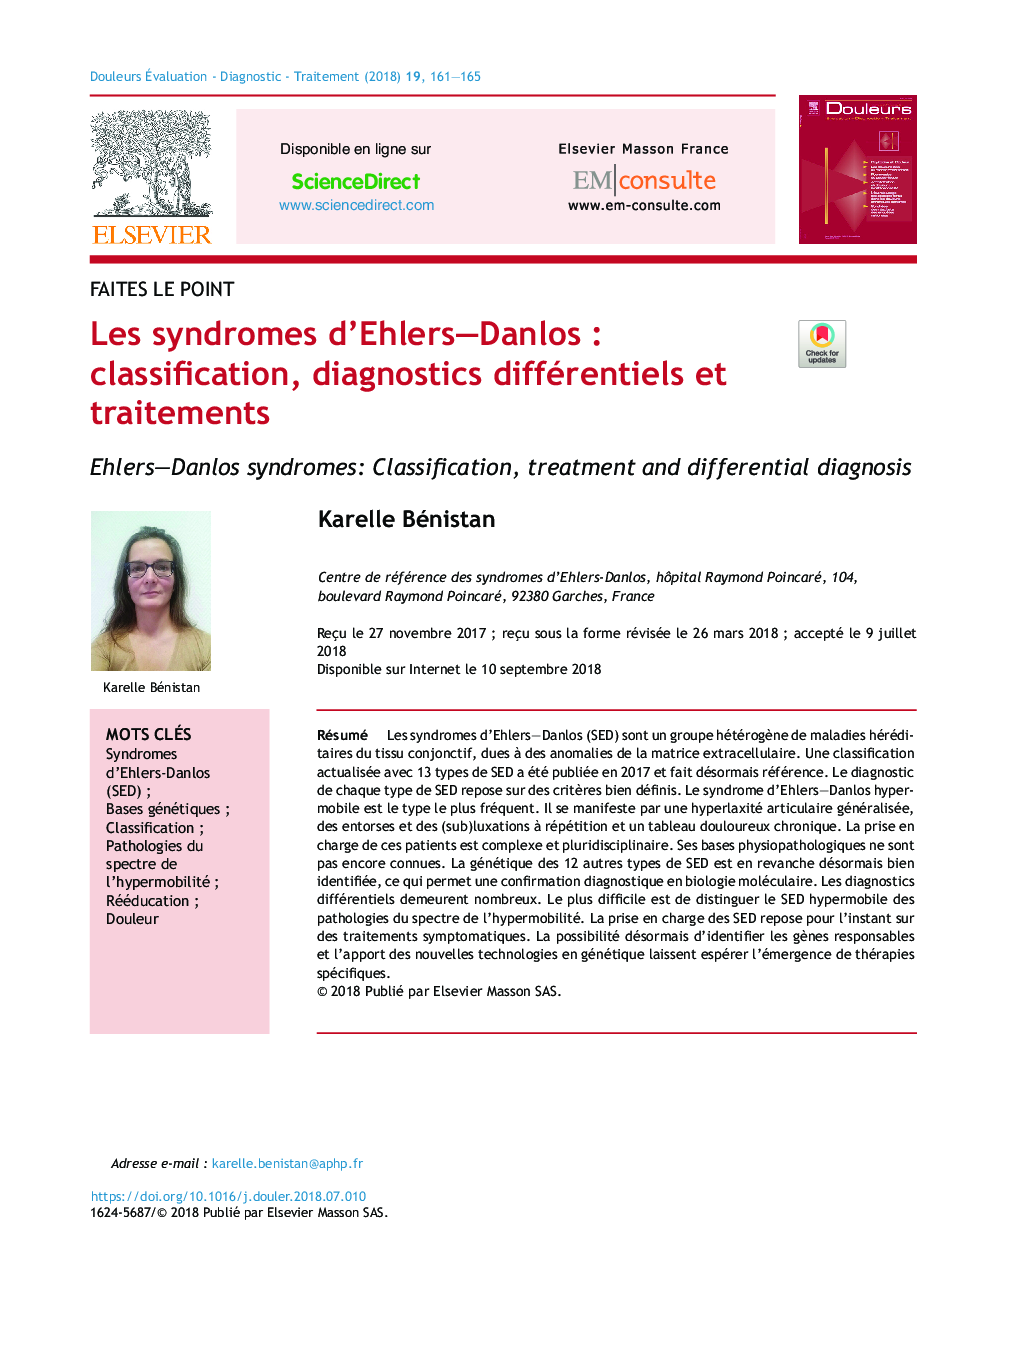 Les syndromes d'Ehlers-DanlosÂ : classification, diagnostics différentiels et traitements